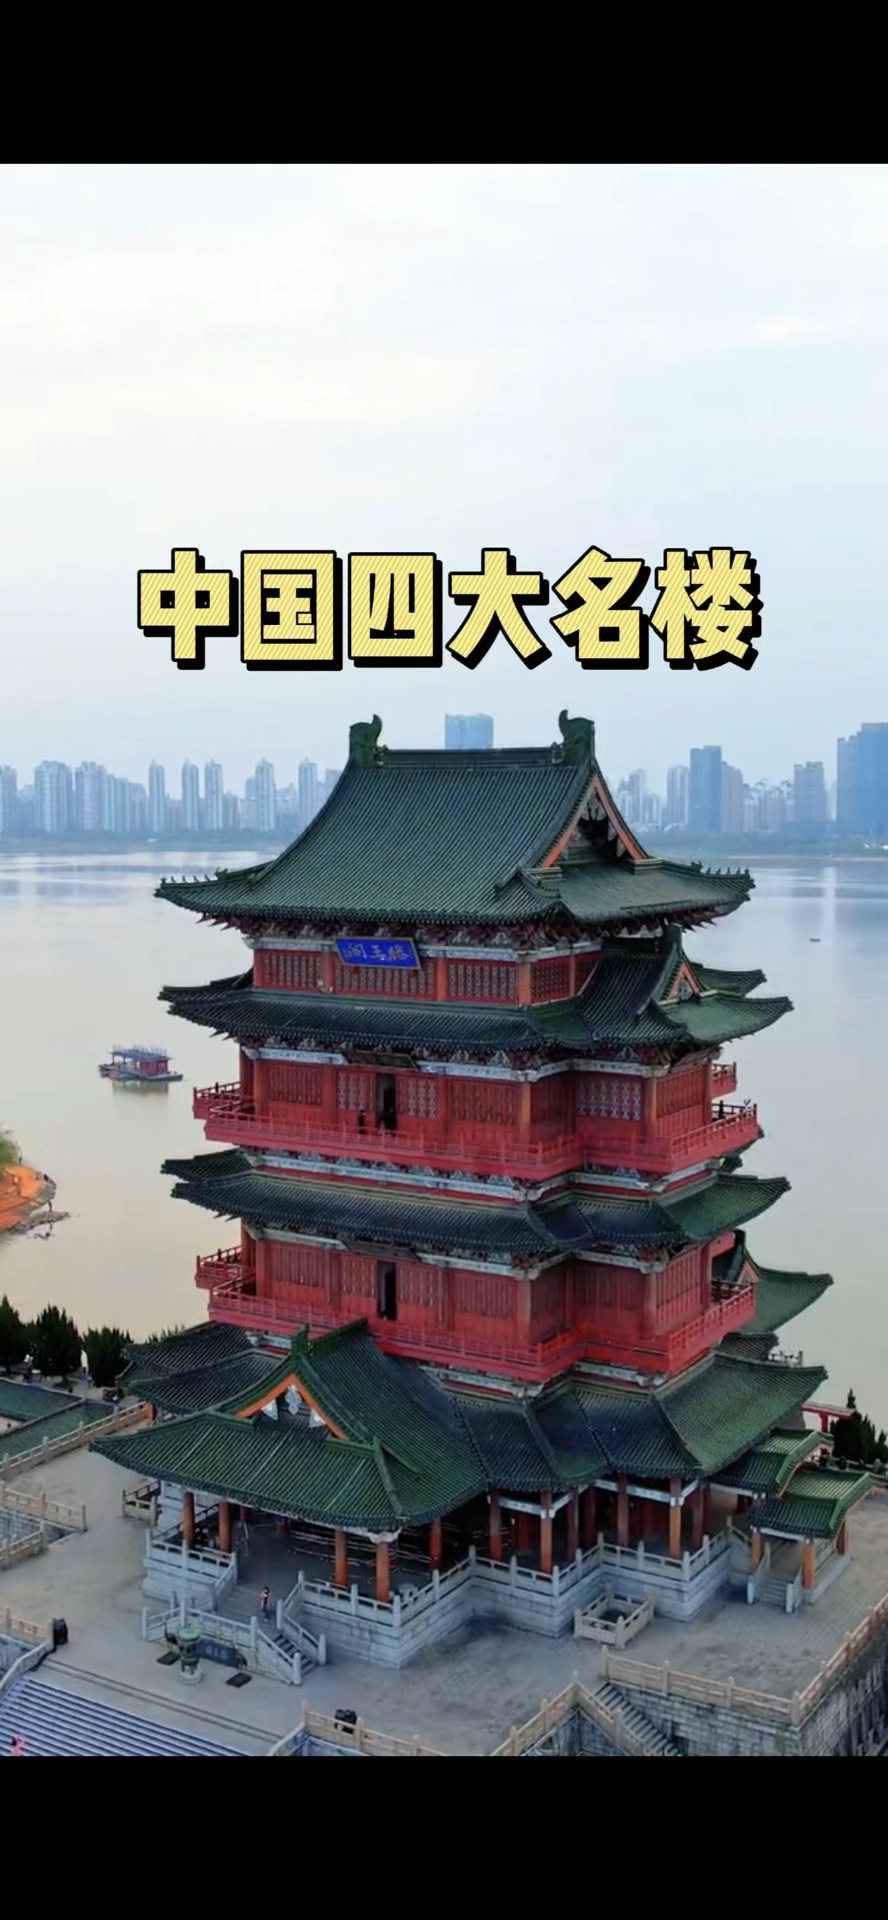 中国四大名楼,各有千秋之美